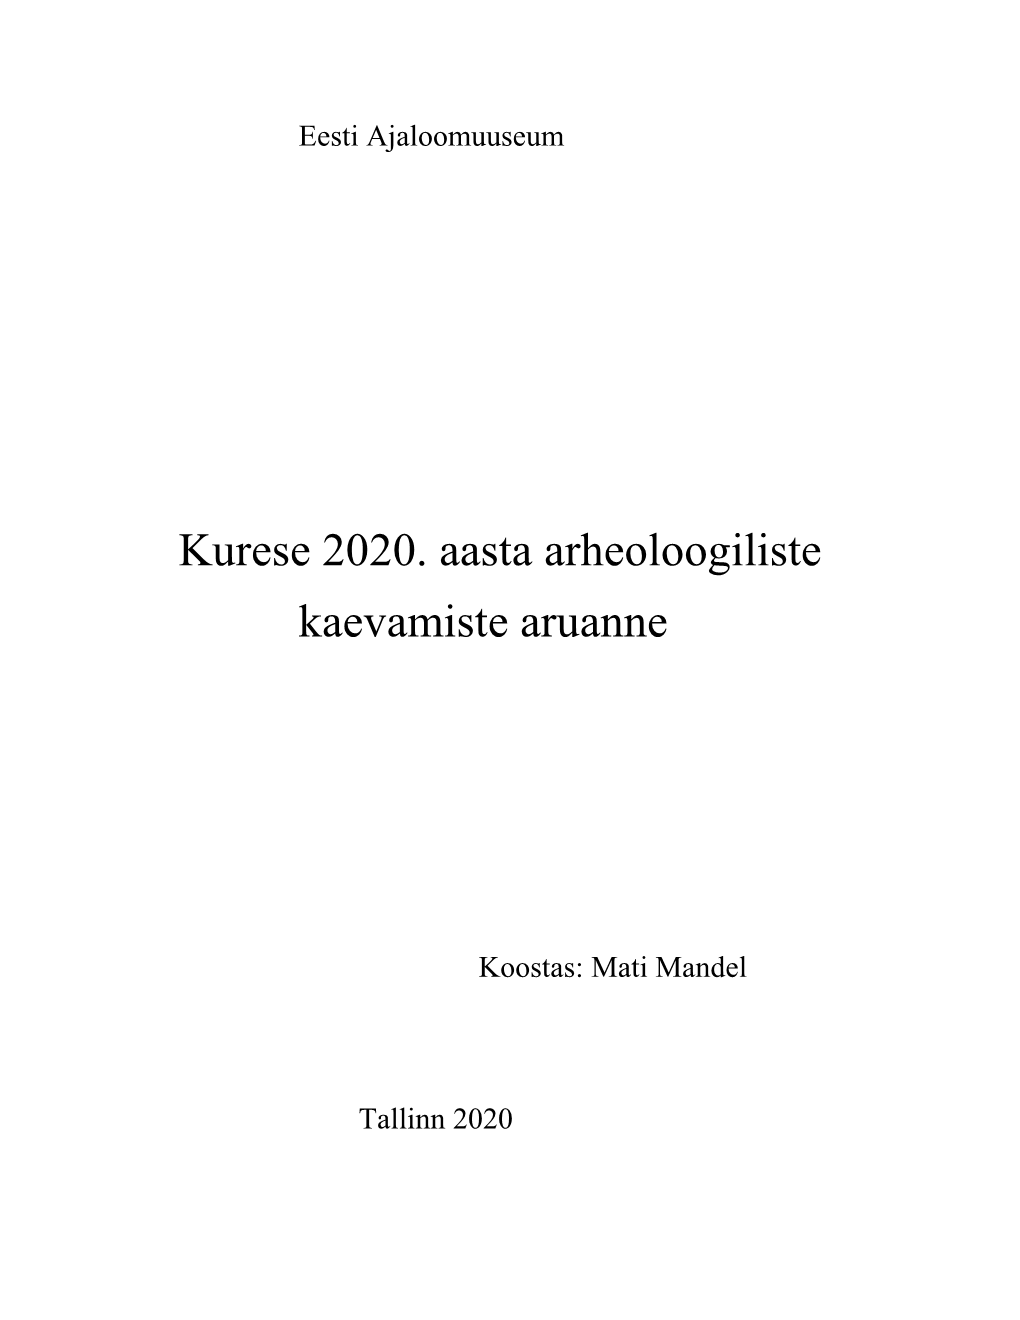 Mandel, M. 2020. Kurese 2020. Aasta Arheoloogiliste Kaevamiste Aruanne